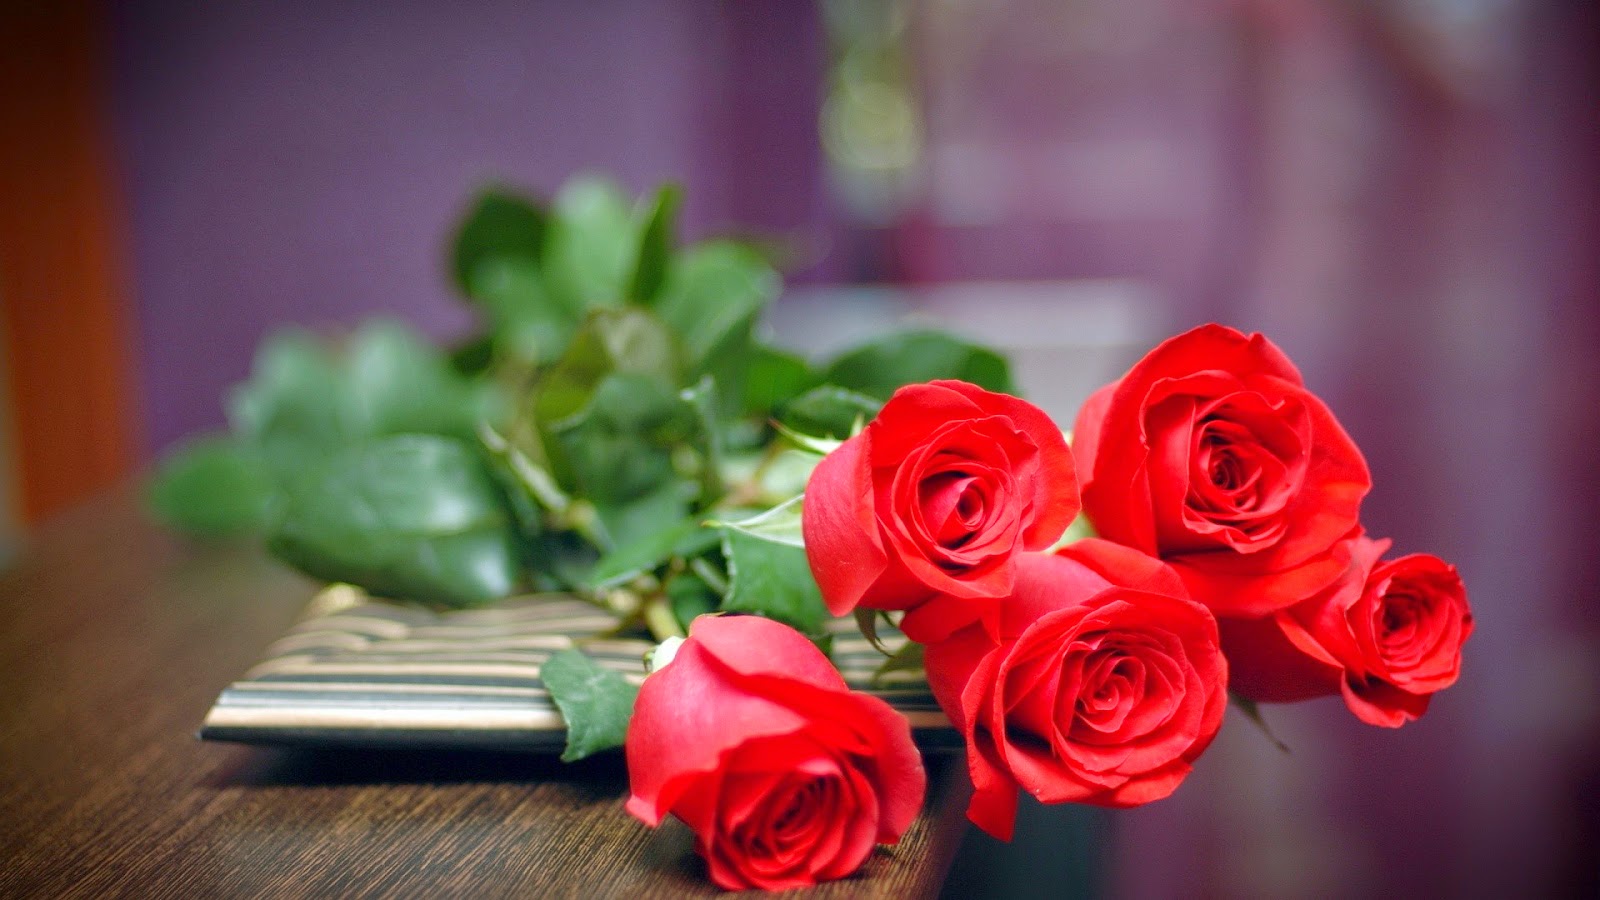 Hoa hồng đỏ tượng trưng cho tình yêu thương